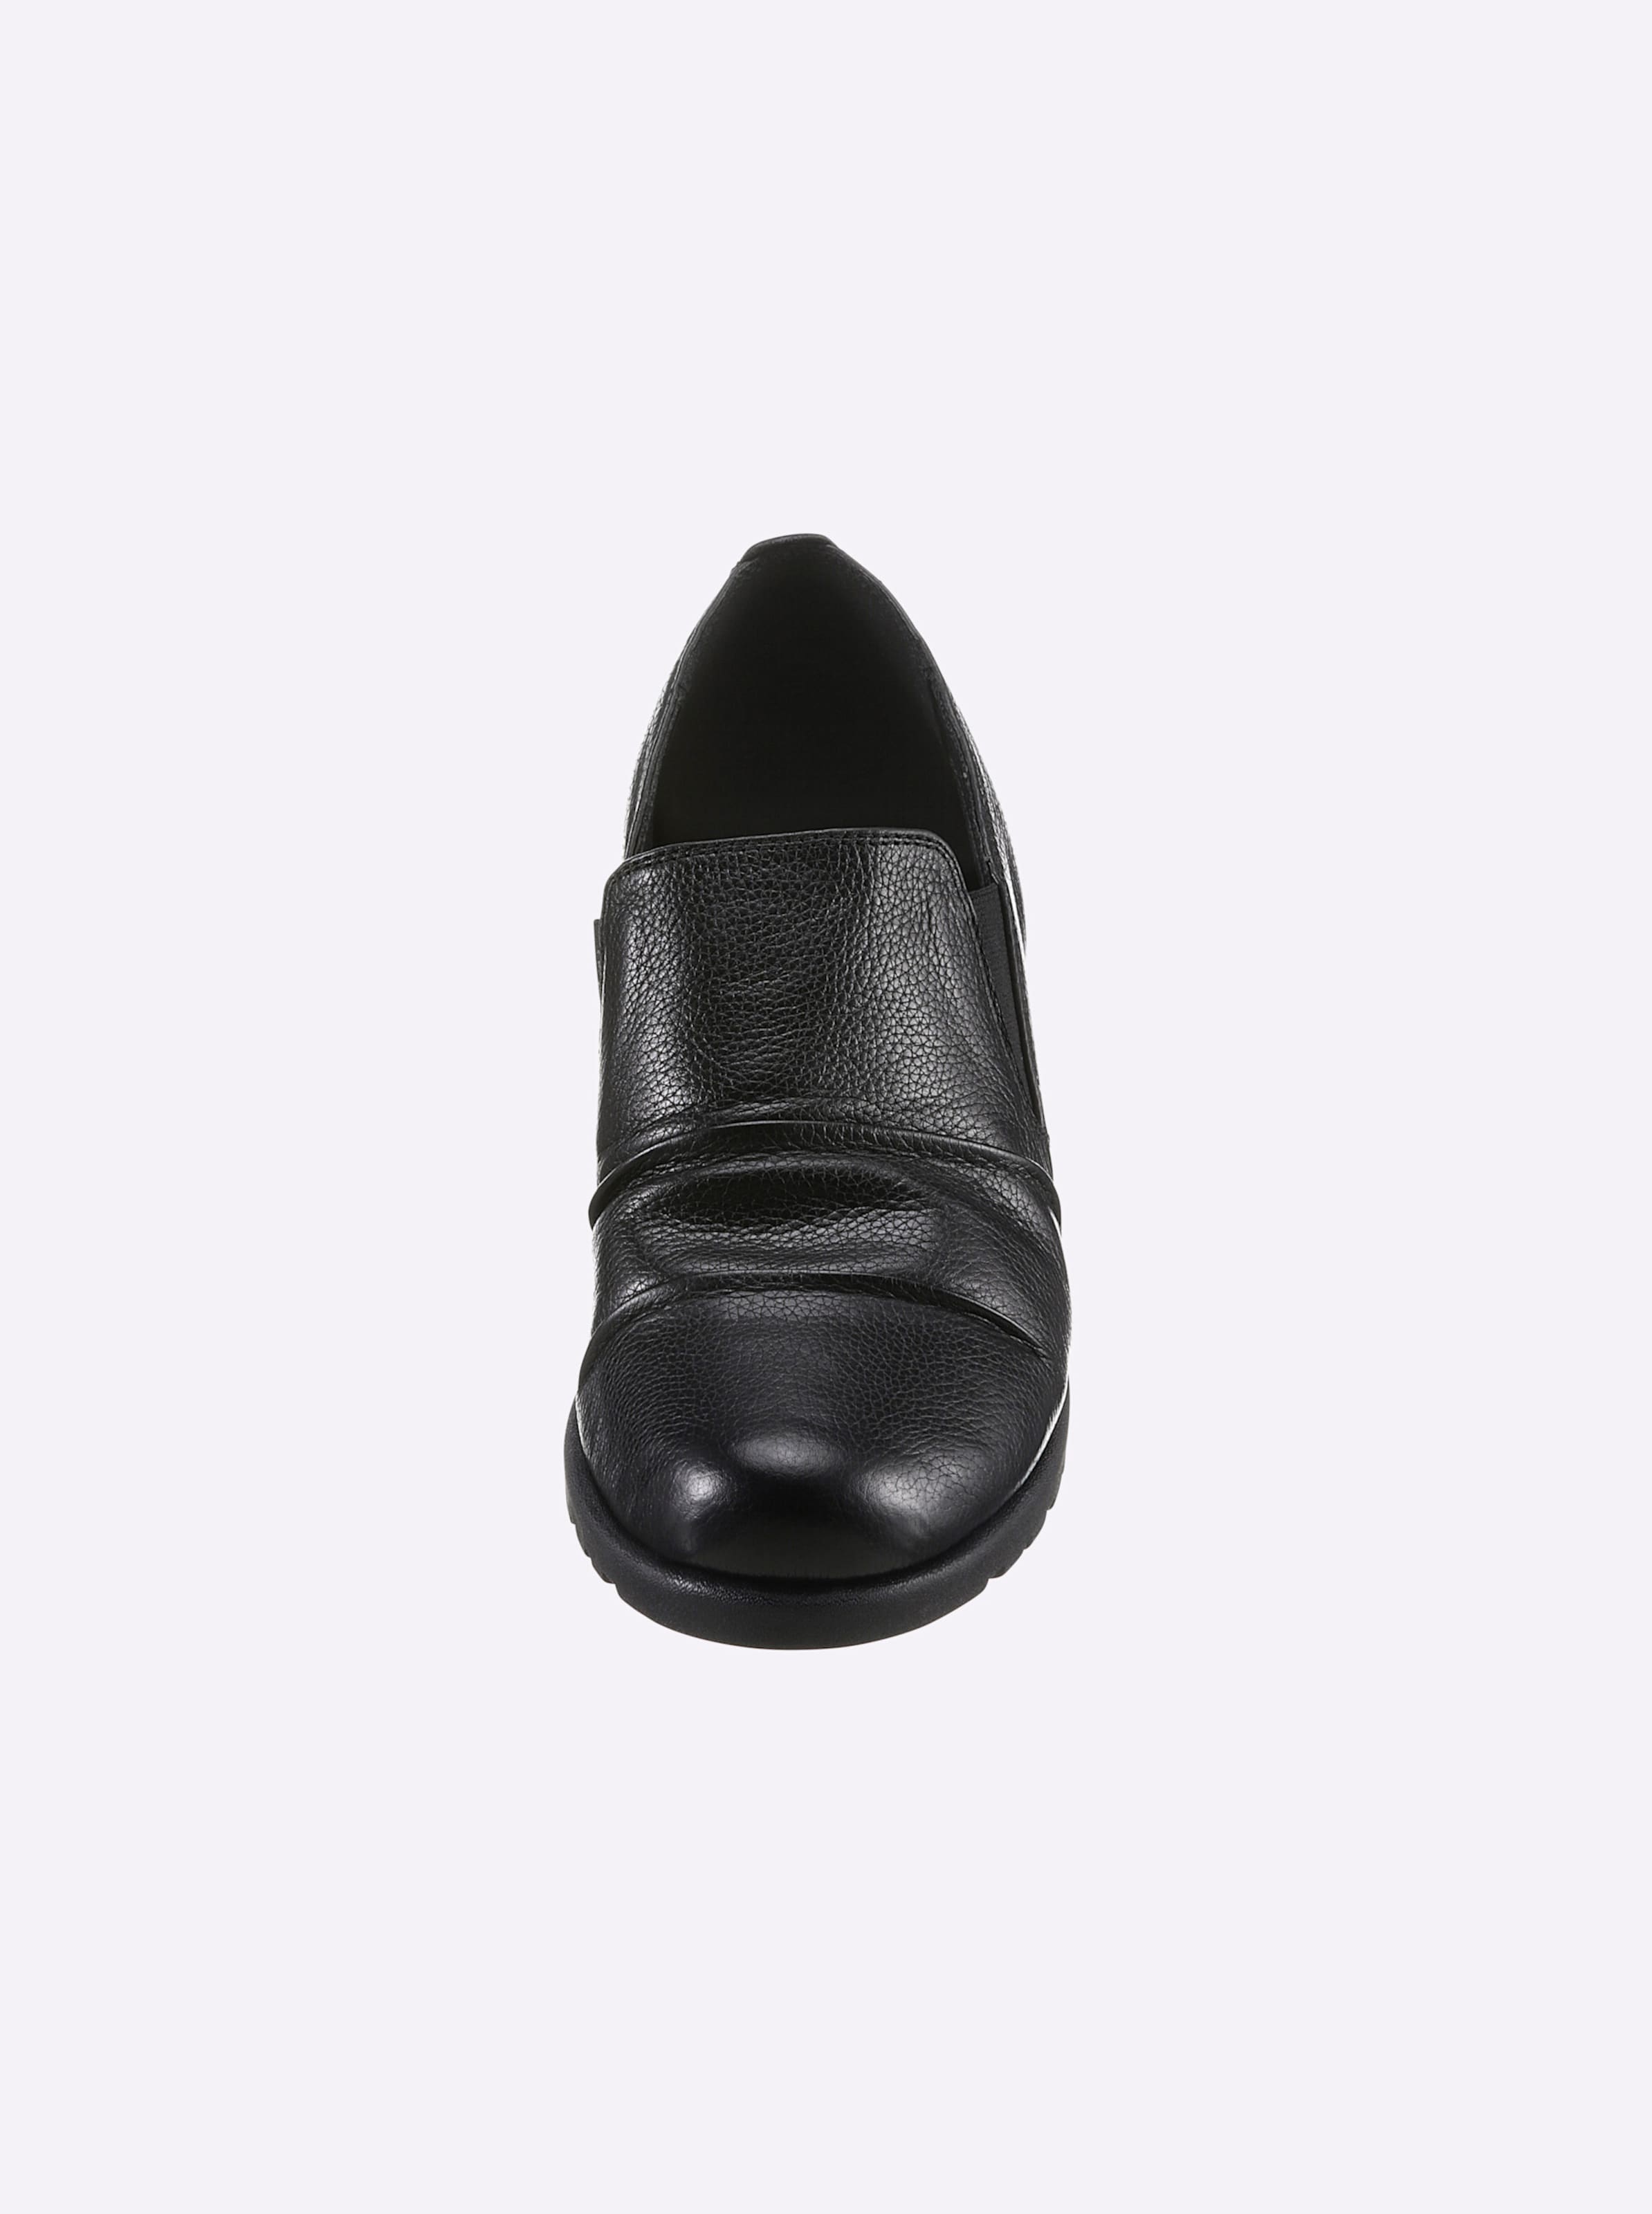 und Leder günstig Kaufen-Slipper in schwarz von airsoft comfort+. Slipper in schwarz von airsoft comfort+ <![CDATA[Der Slipper von Airsoft verwöhnt Ihre Füße mit weicher Trittdämpfung und atmungsaktiver Leder-Qualität. Optisch gefallen die raffinierten Raffungen am Blatt. In